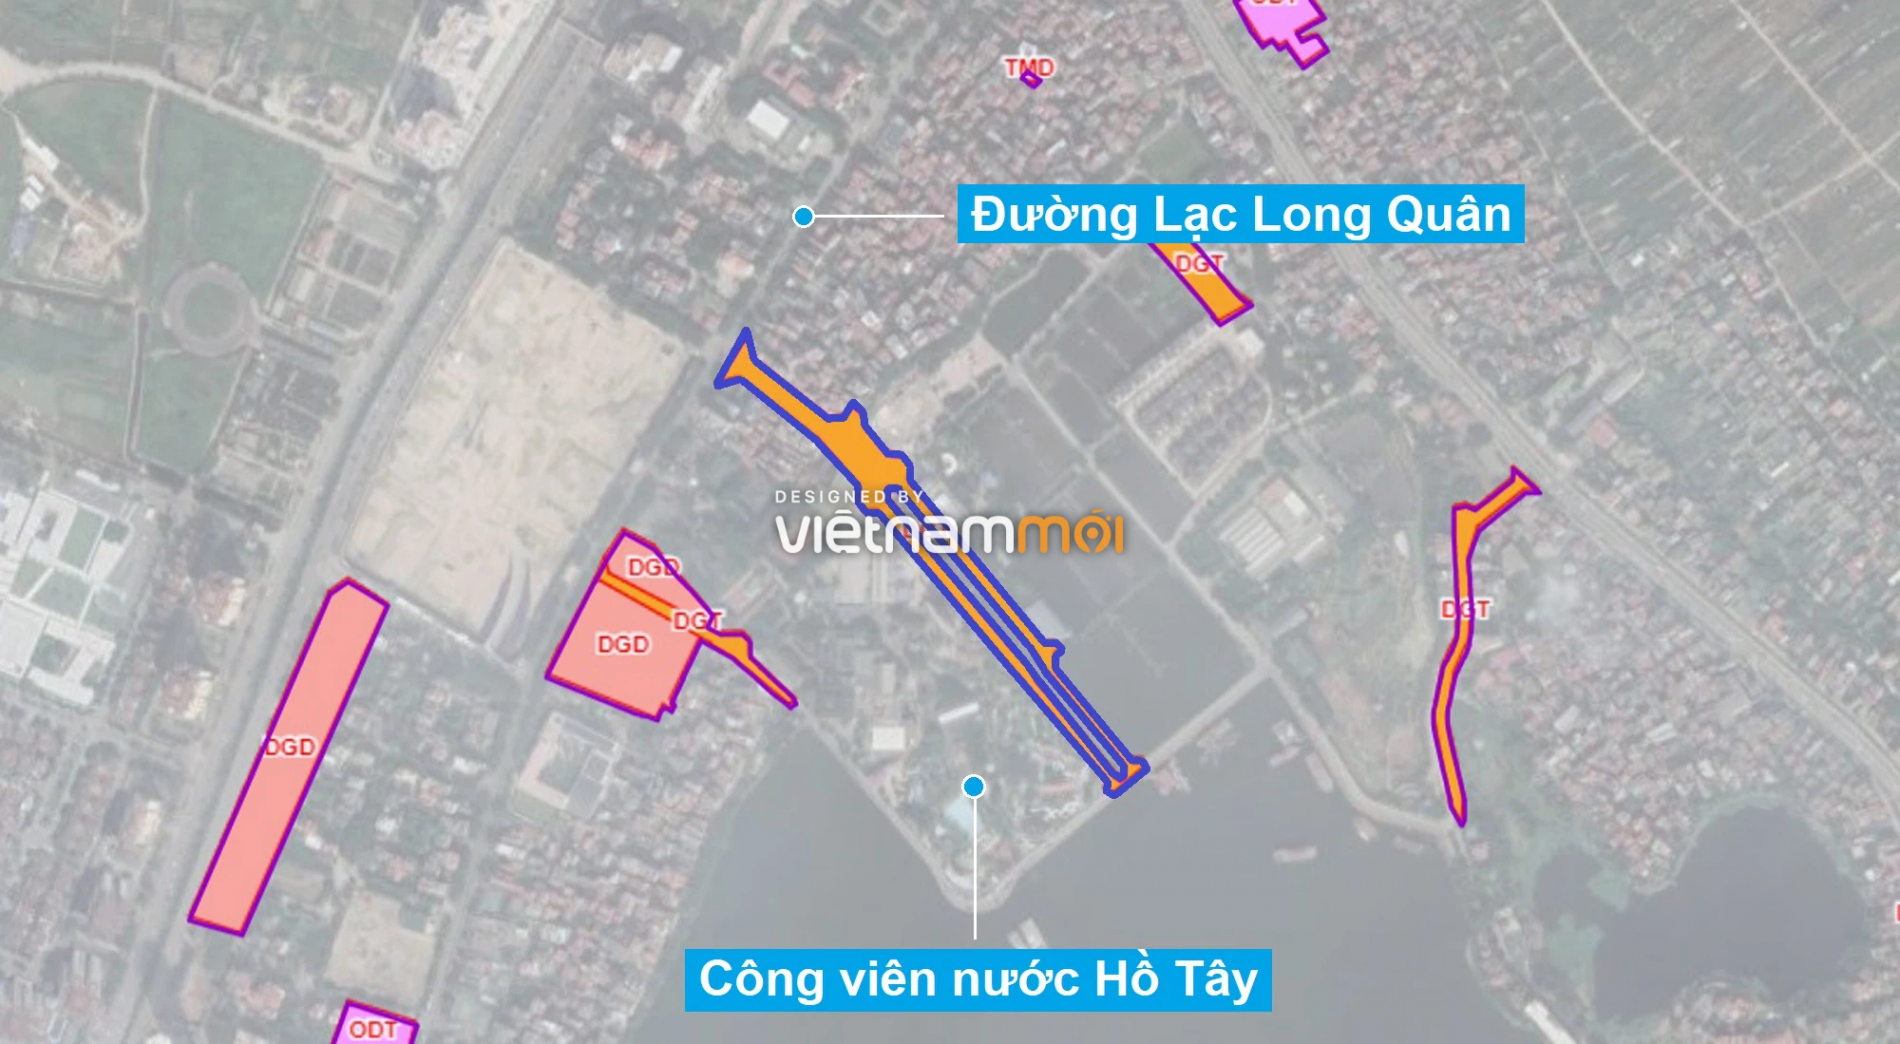 Những khu đất sắp thu hồi để mở đường ở quận Tây Hồ, Hà Nội (phần 2) - Ảnh 7.